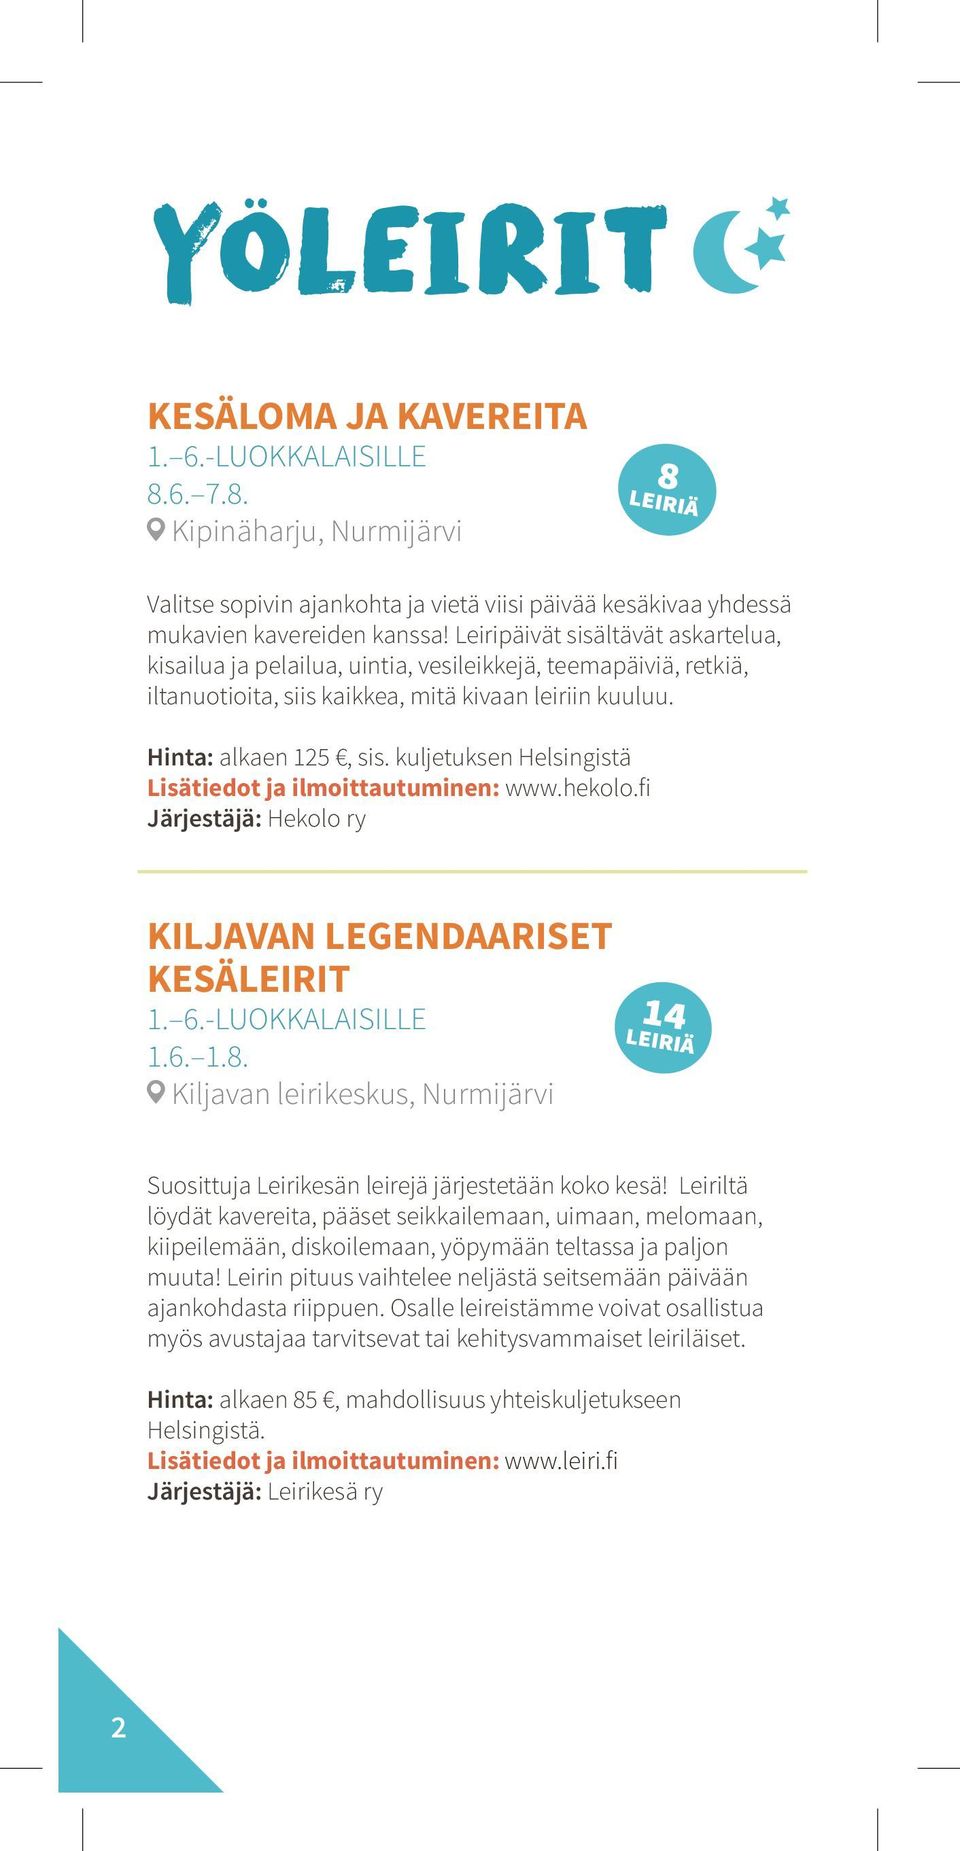 kuljetuksen Helsingistä Lisätiedot ja ilmoittautuminen: www.hekolo.fi Järjestäjä: Hekolo ry KILJAVAN LEGENDAARISET KESÄLEIRIT 1. 6.-LUOKKALAISILLE 1.6. 1.8.